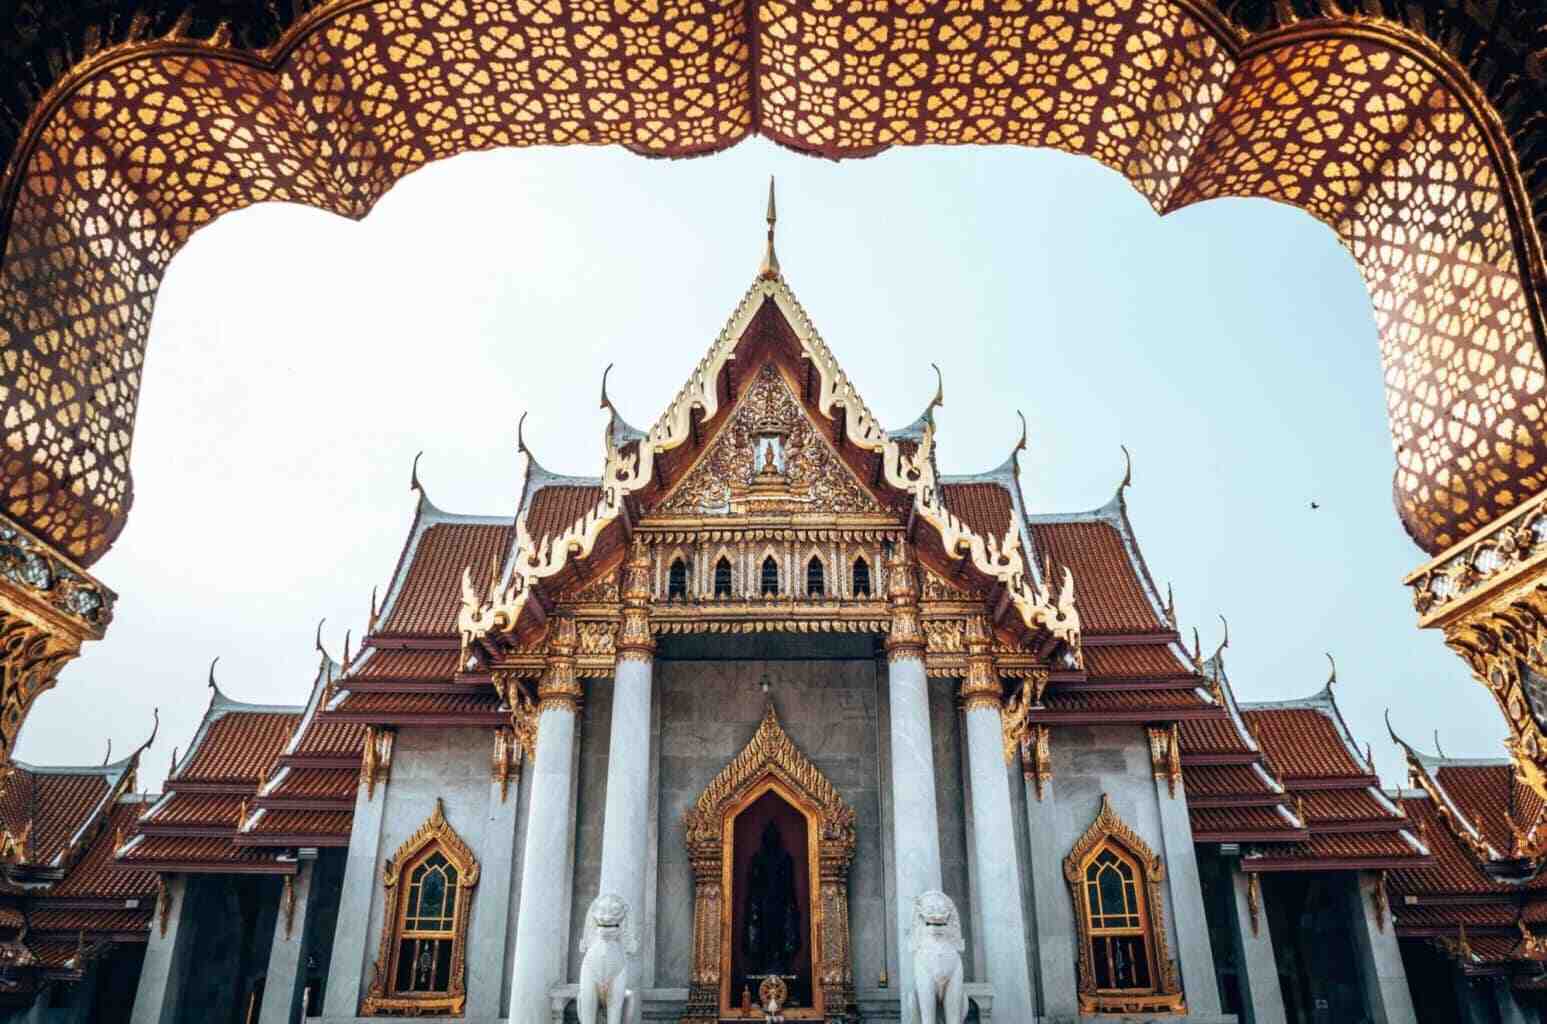 ما المستندات التي أحتاجها للذهاب إلى تايلاند؟